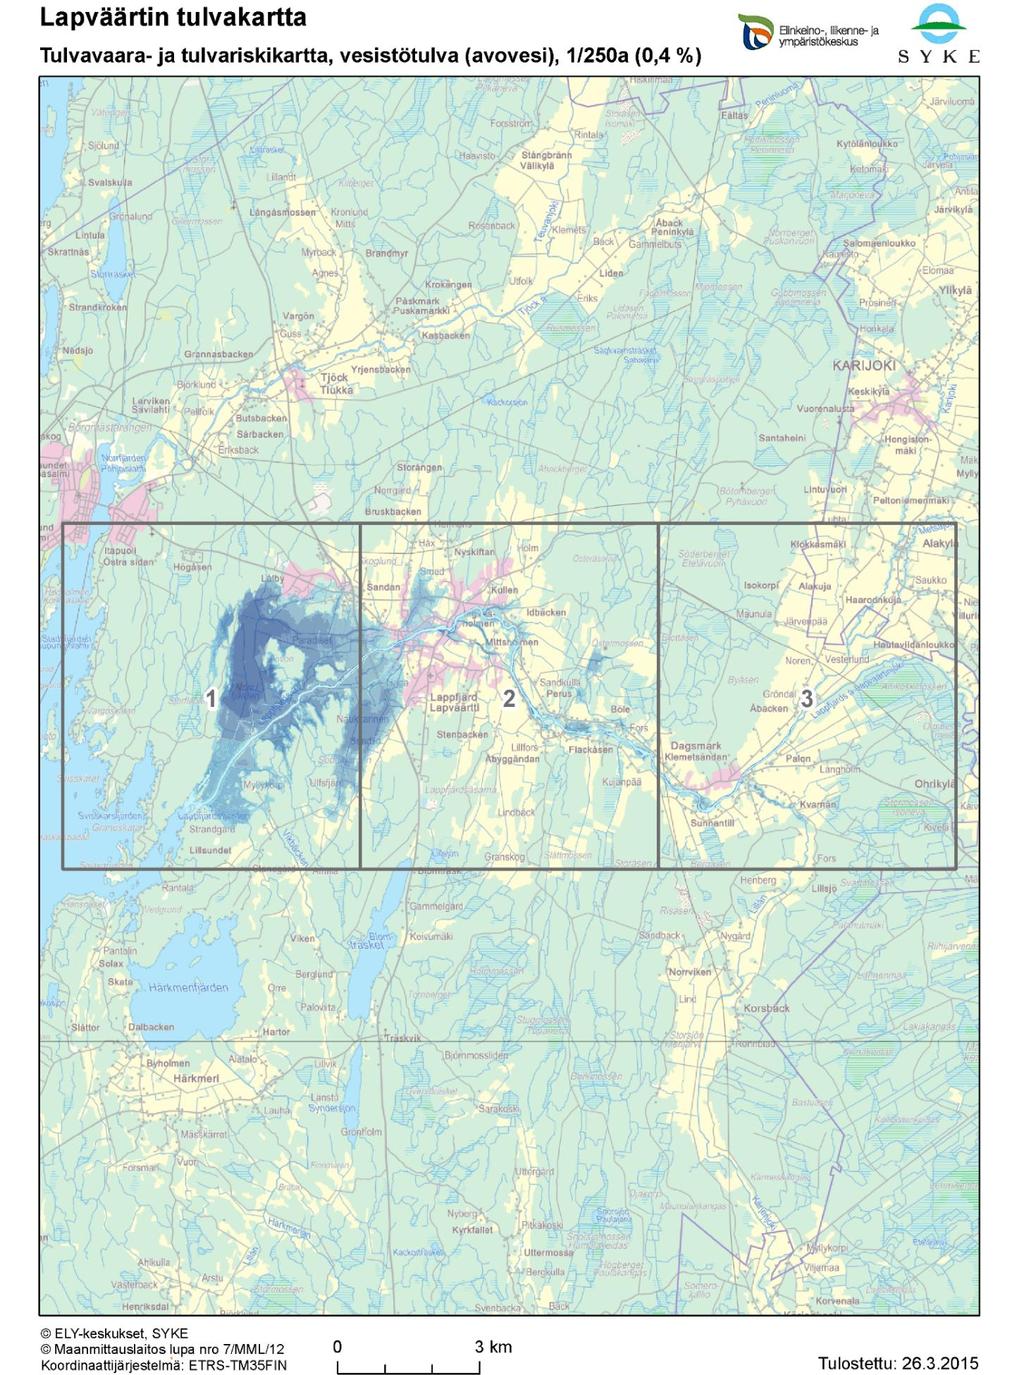 Lapväärtin-Isojoen vesistöalueen tulvakartat (toistuvuus 1/250 a) Liite 3.